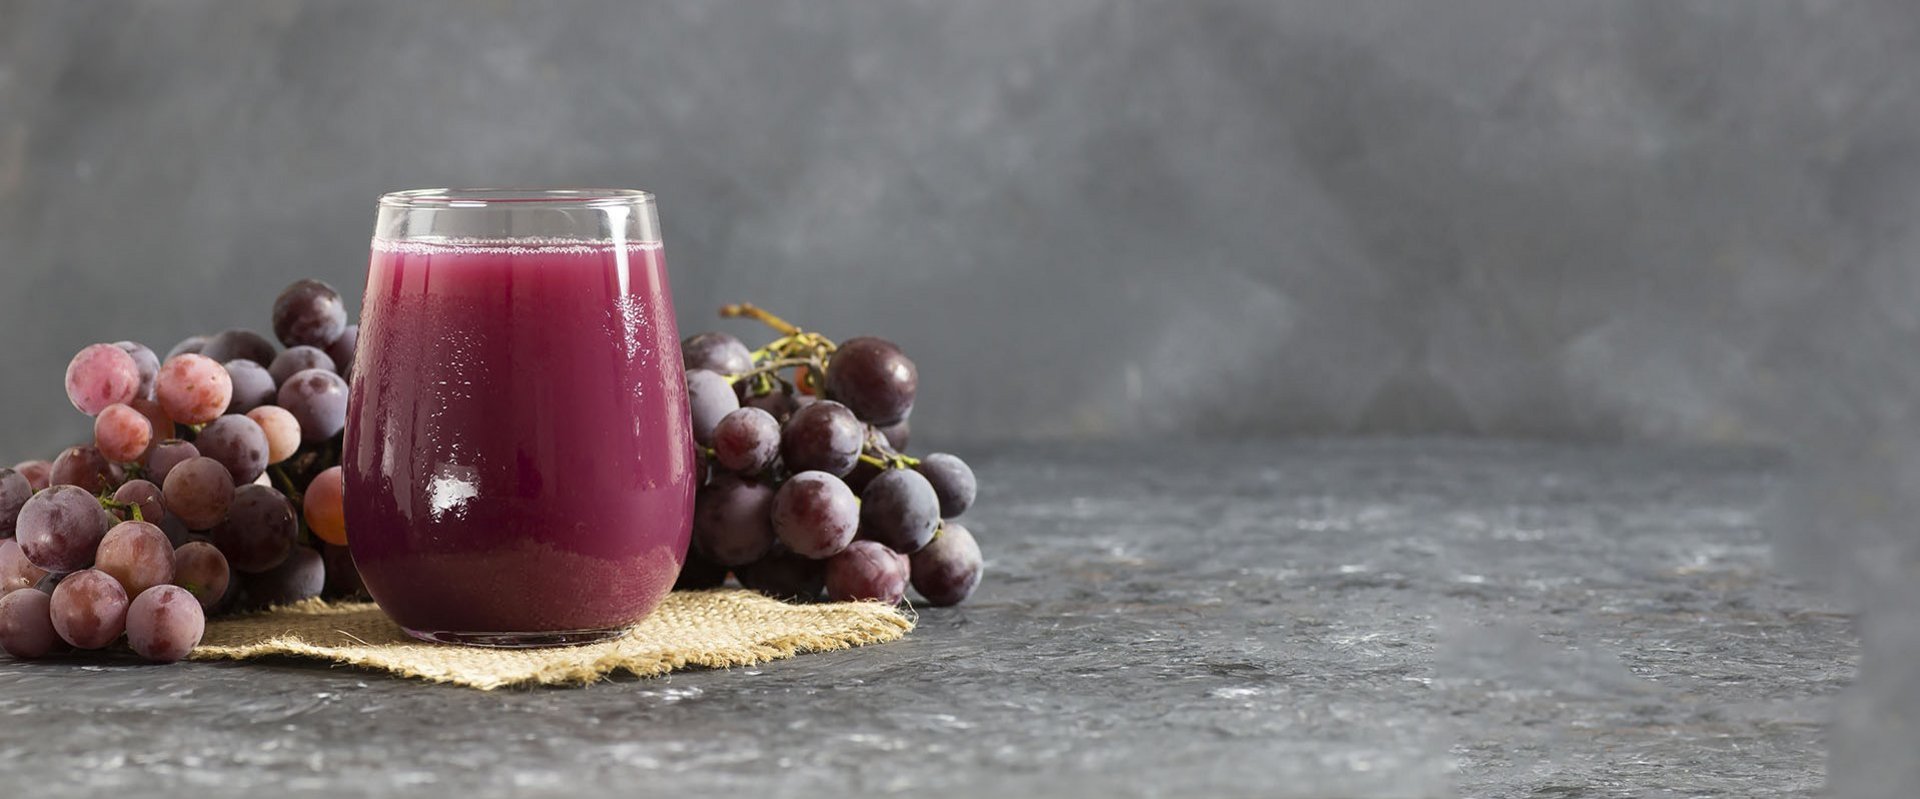 Ein Glas Saft mit Weintrauben im Hintergrund.